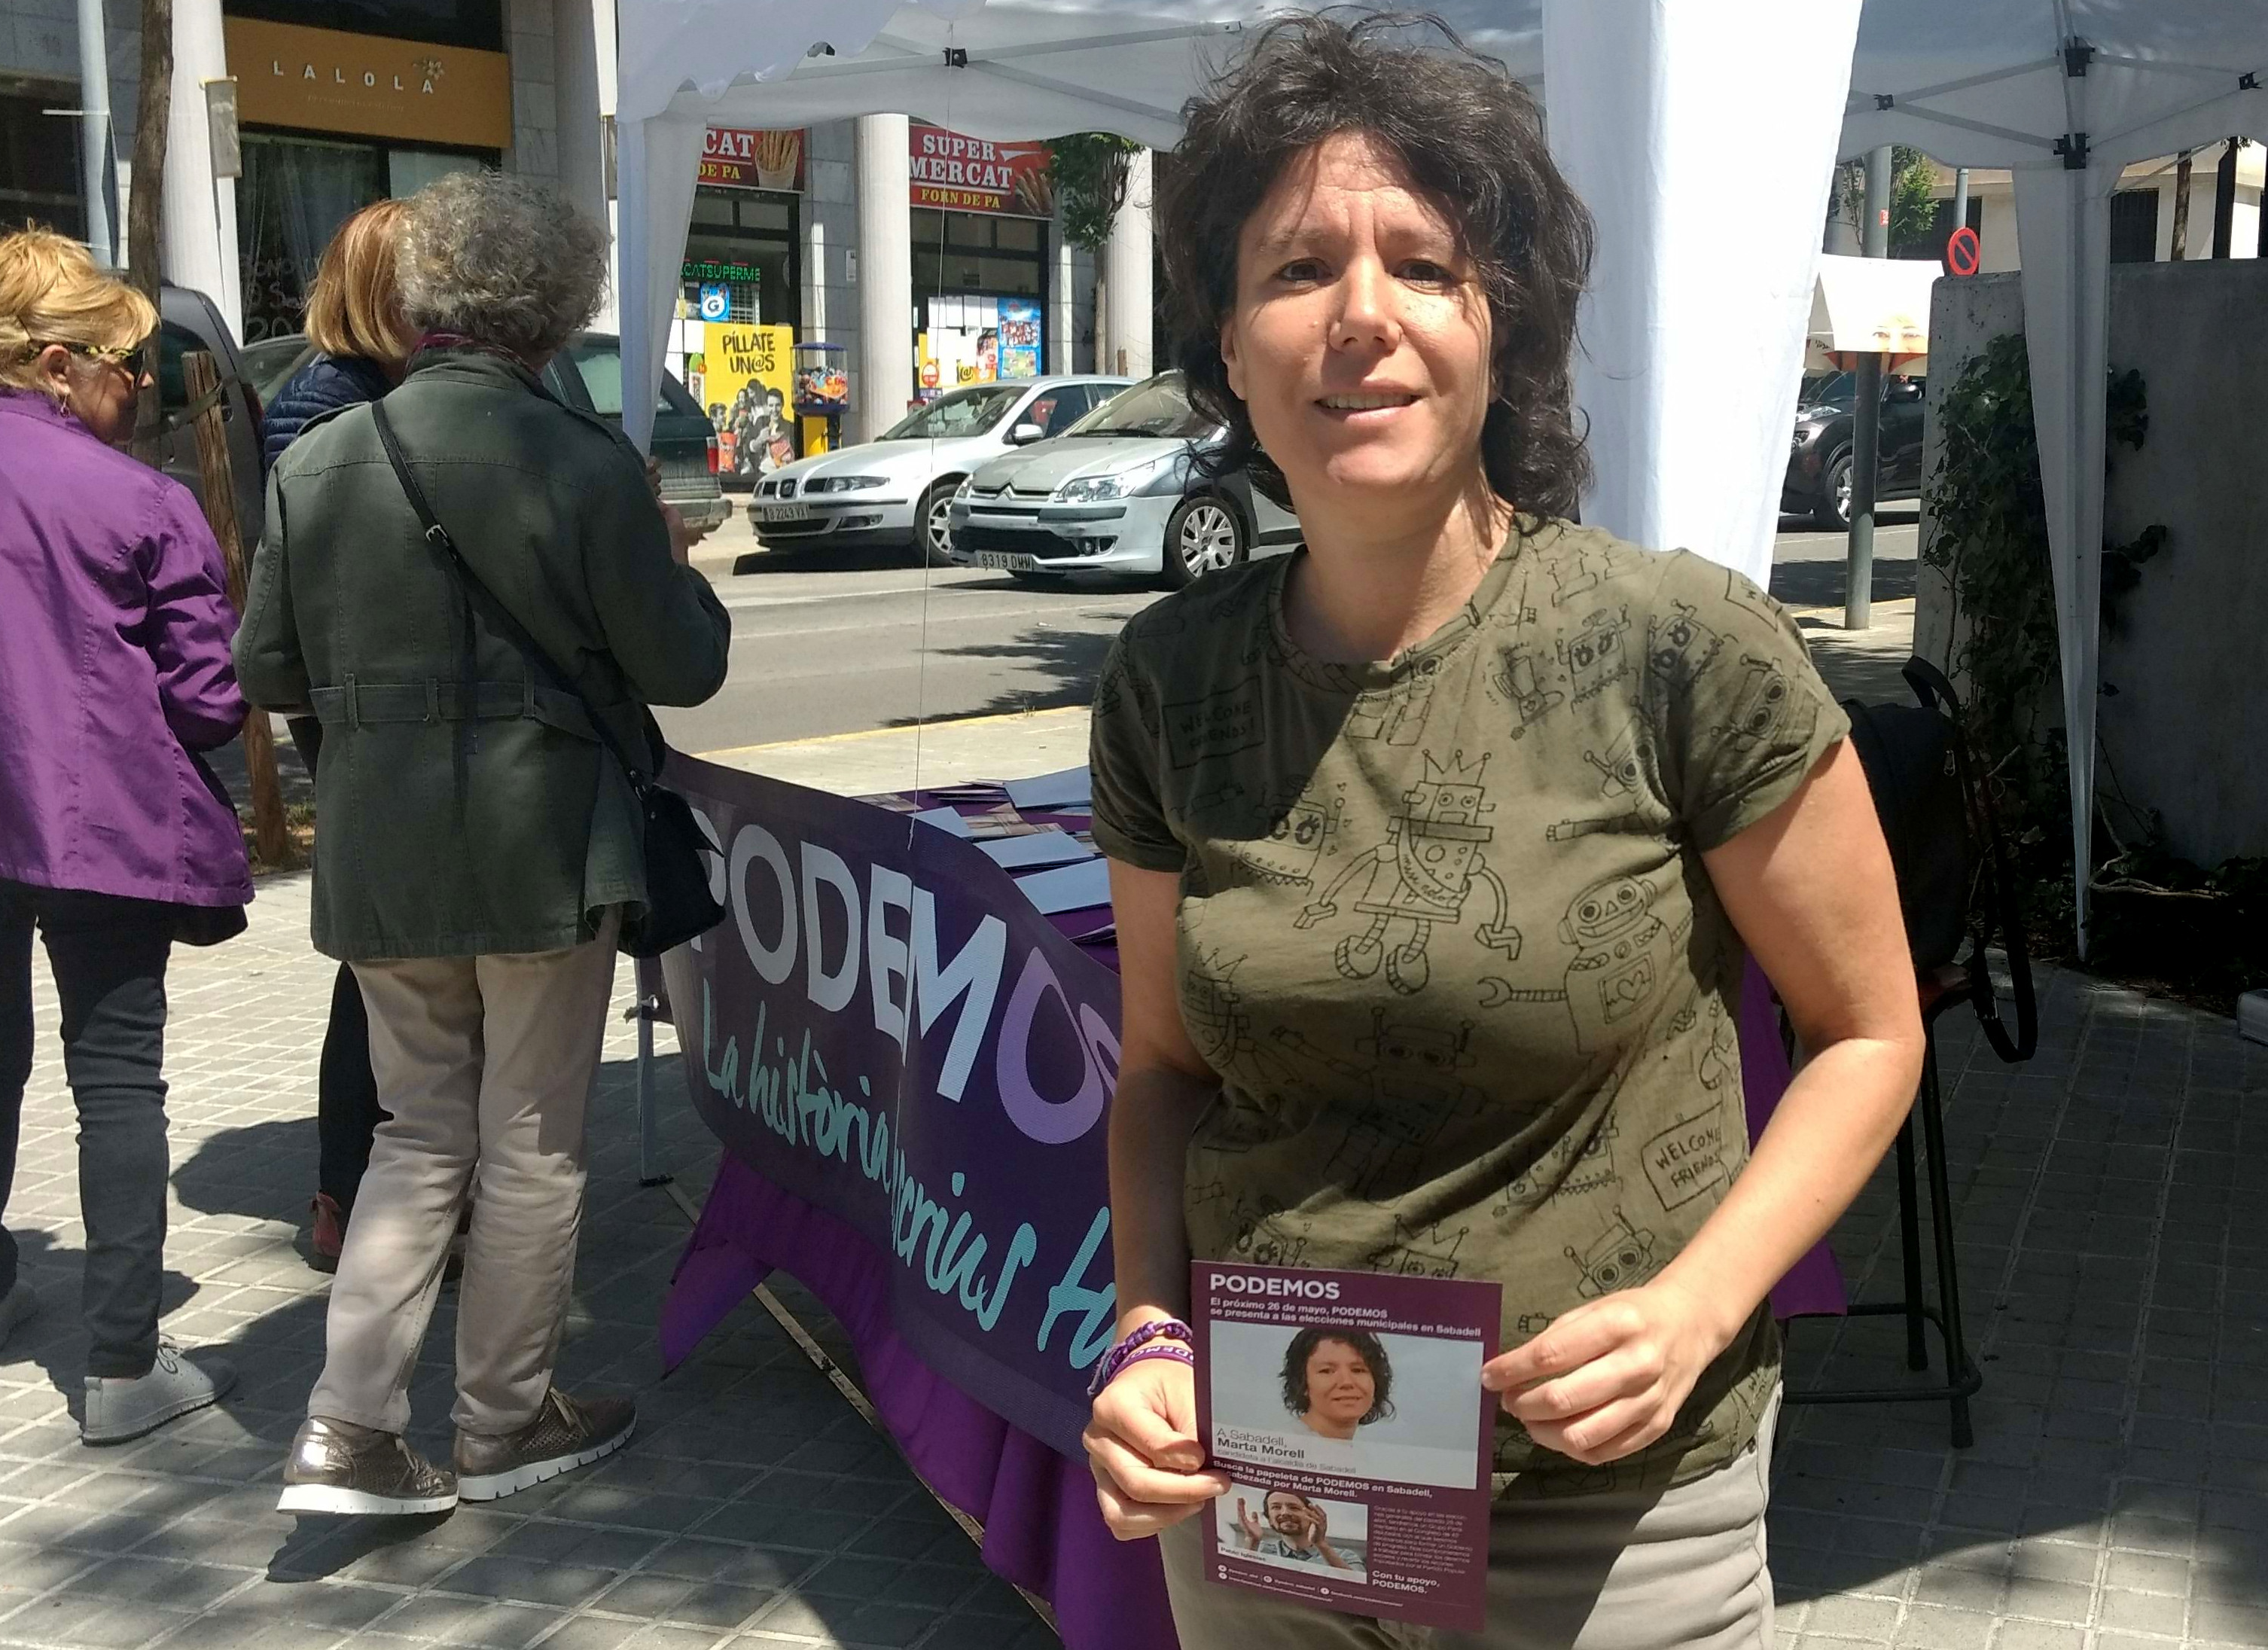 El partit polític Podem, ha expulsat a la seva única regidora de Sabadell